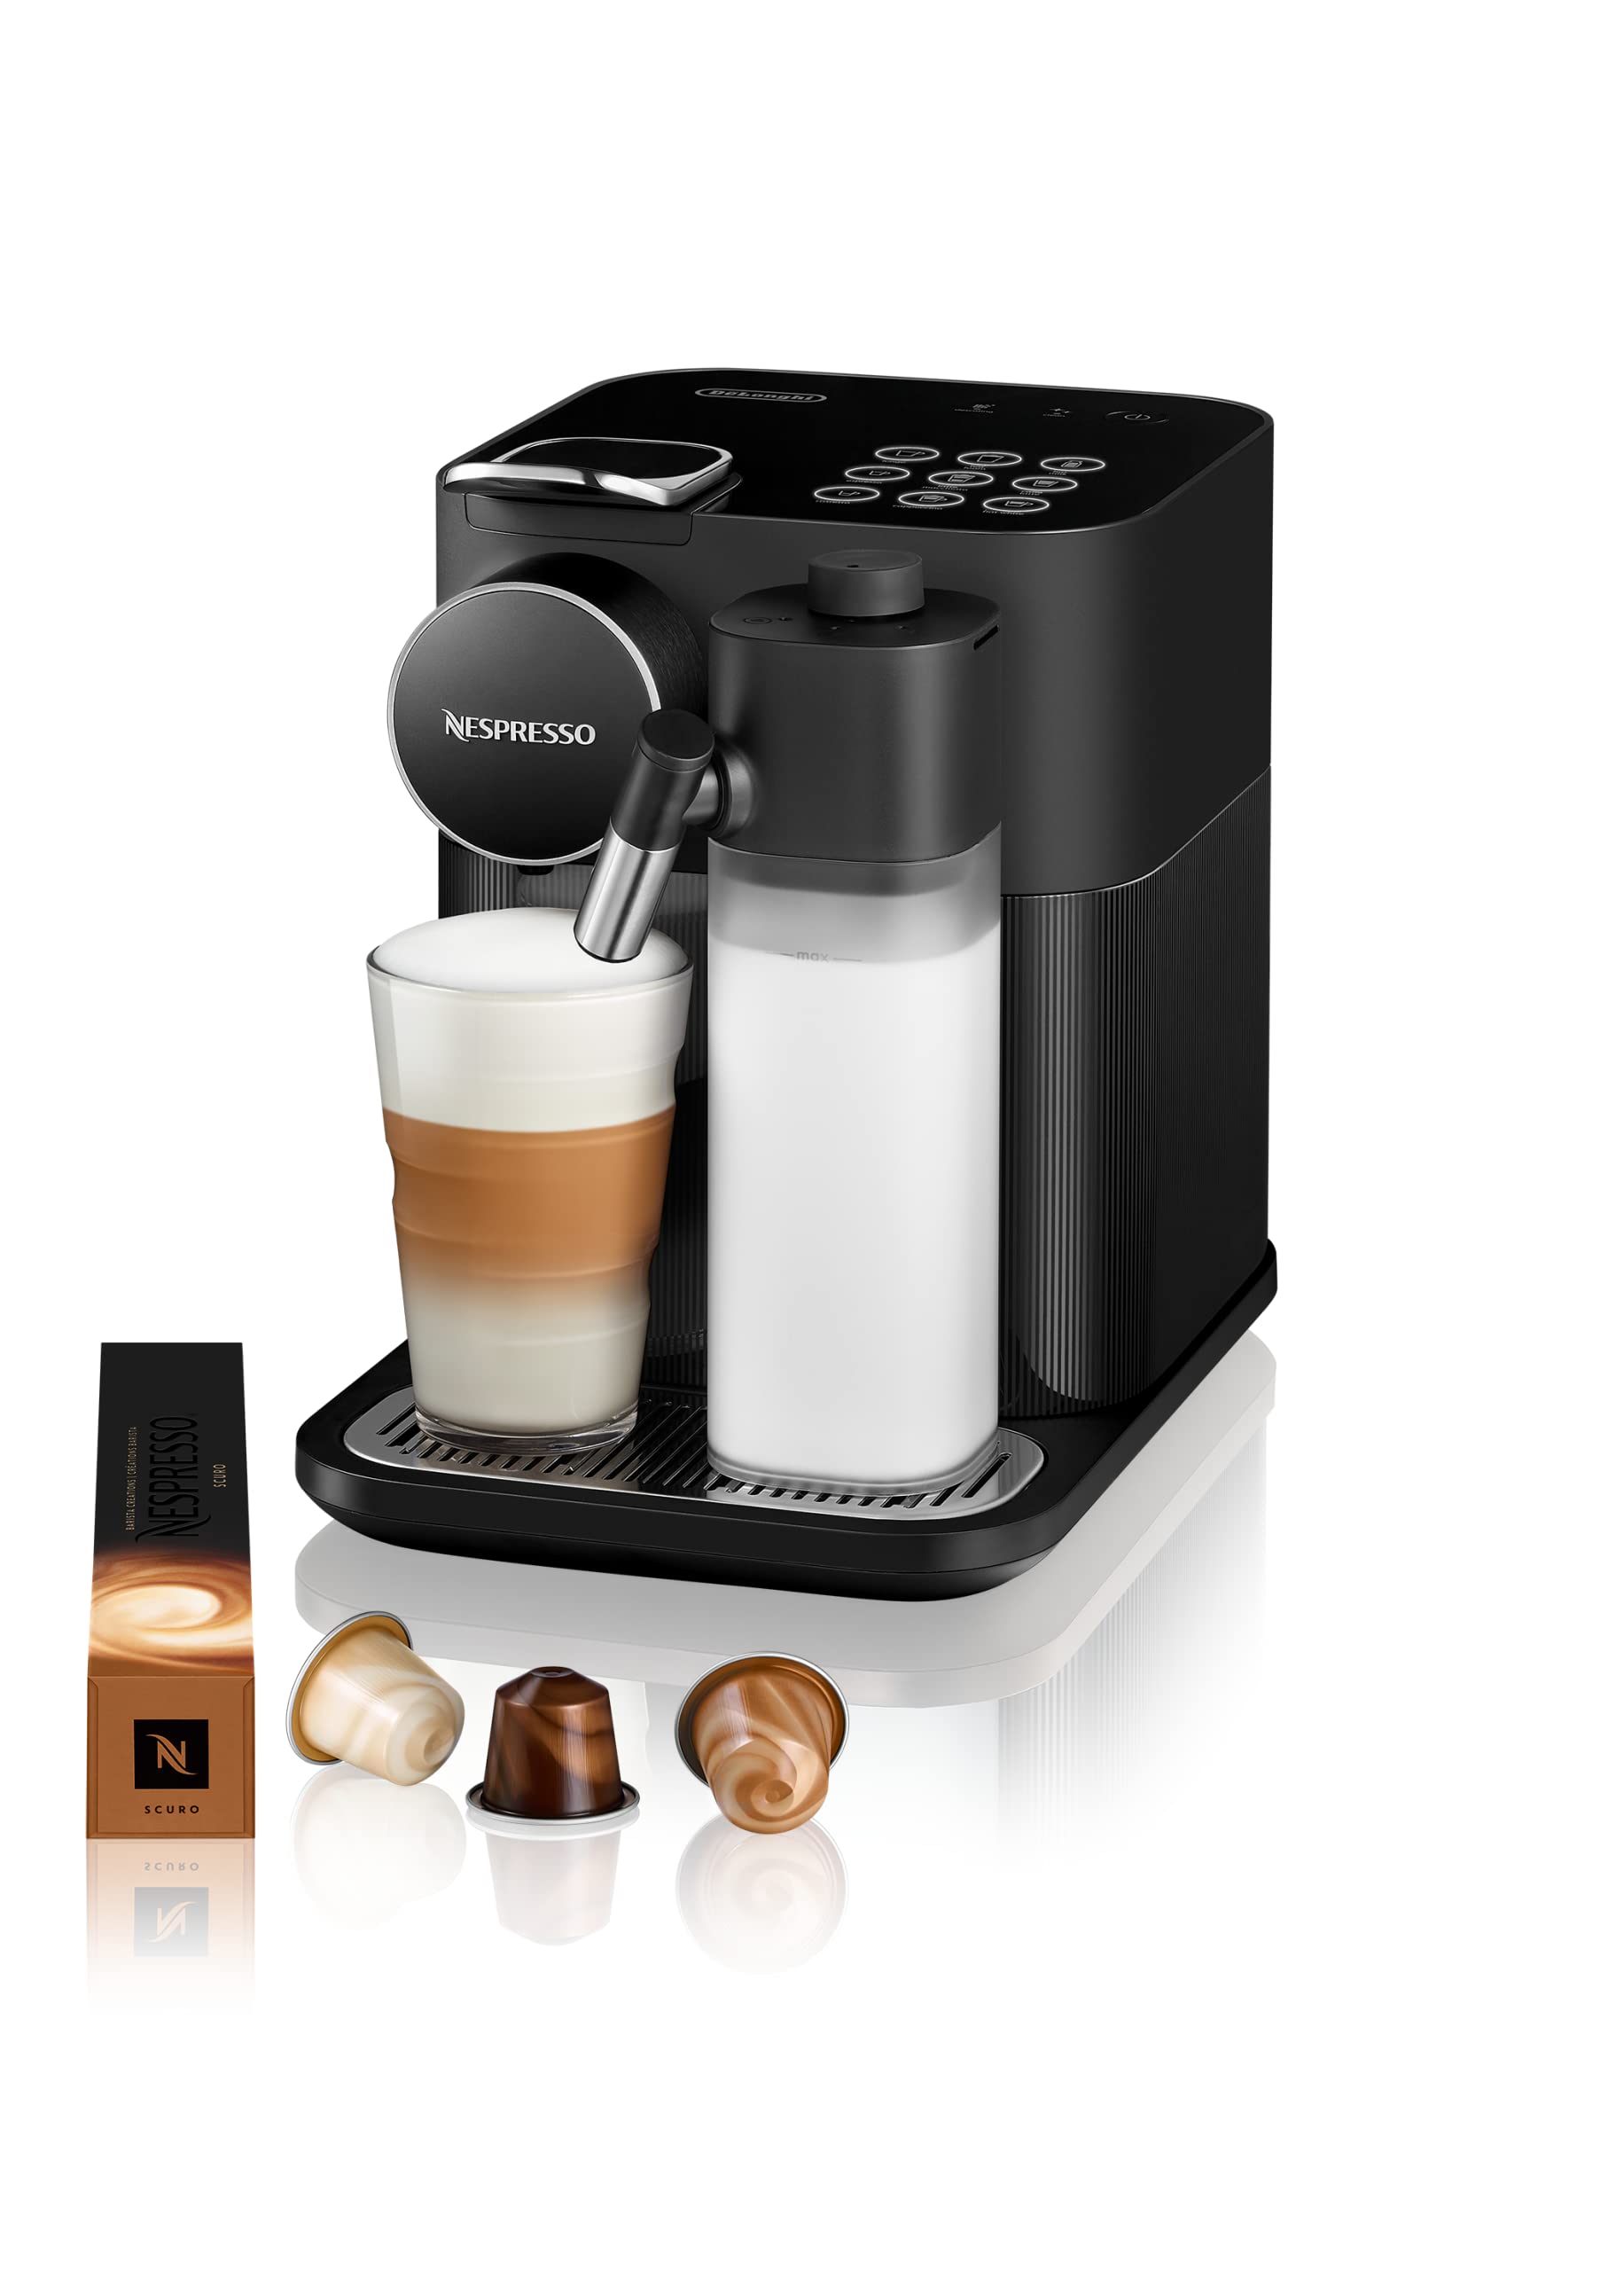 Nespresso De'Longhi Gran Lattissima EN650.B Kaffeekapselmaschine mit automatischem Milchsystem, 9 Direktwahltasten, 1 L Wassertank, 25 Sek. Aufheizzeit, 19 bar Pumpendruck, Auto-Abschaltung, schwarz